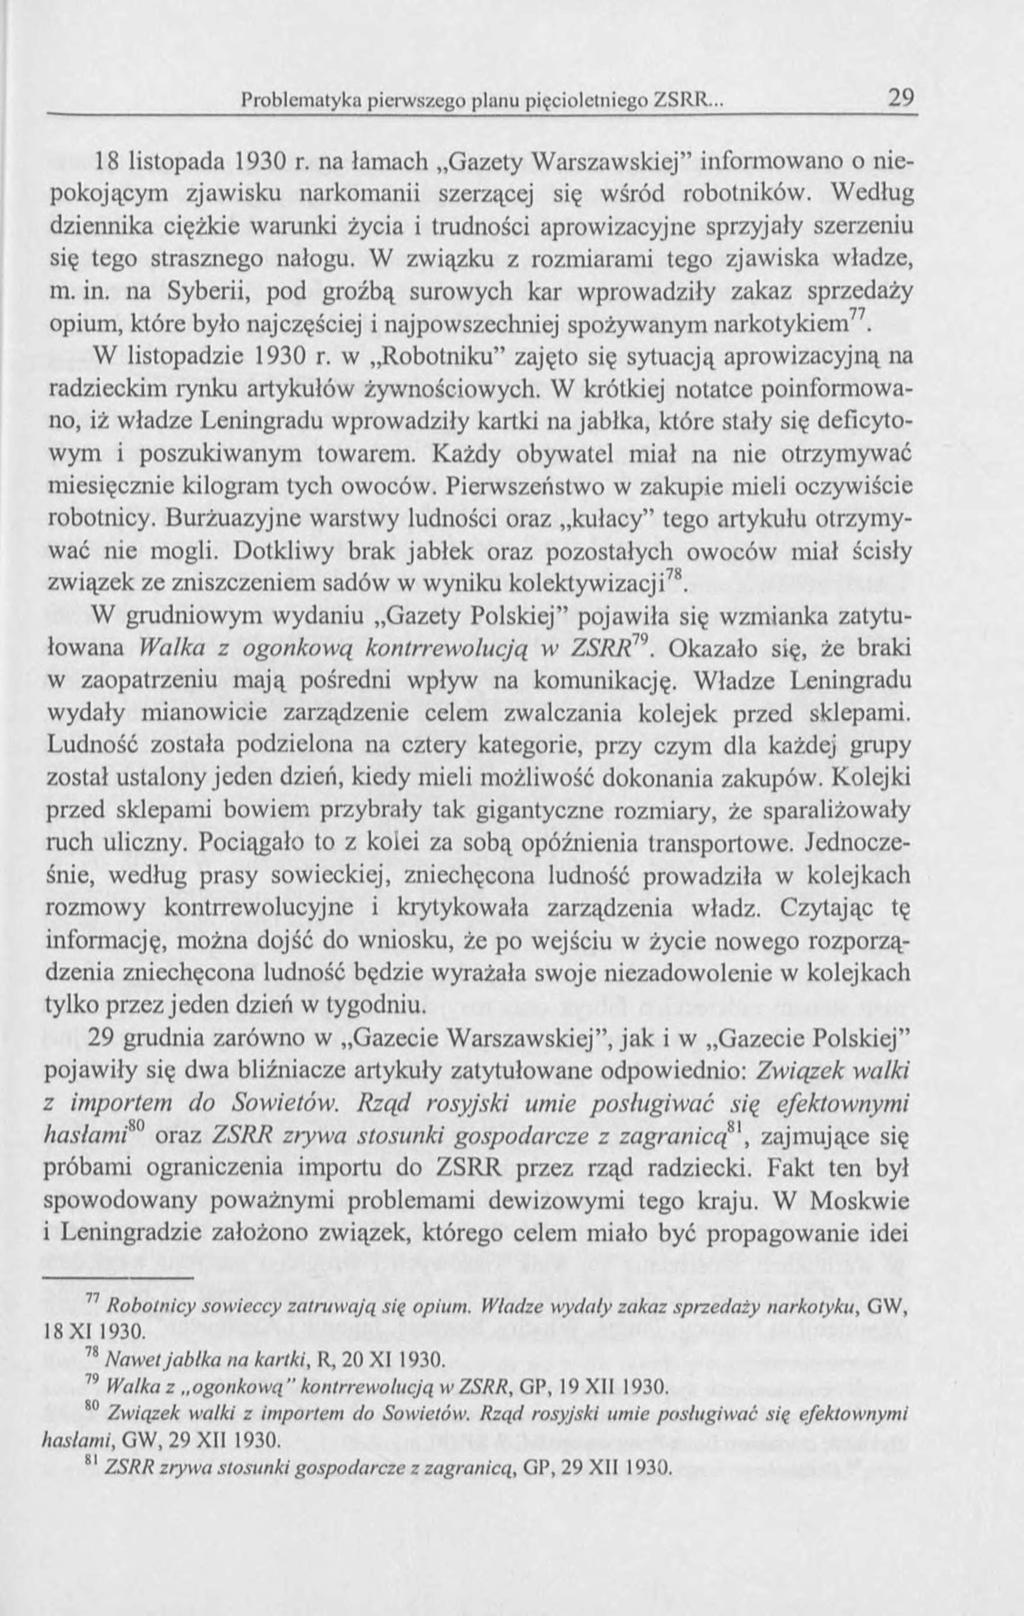 18 listopada 1930 r. na lamach Gazety Warszawskiej informowano o niepokojącym zjawisku narkomanii szerzącej się wśród robotników.